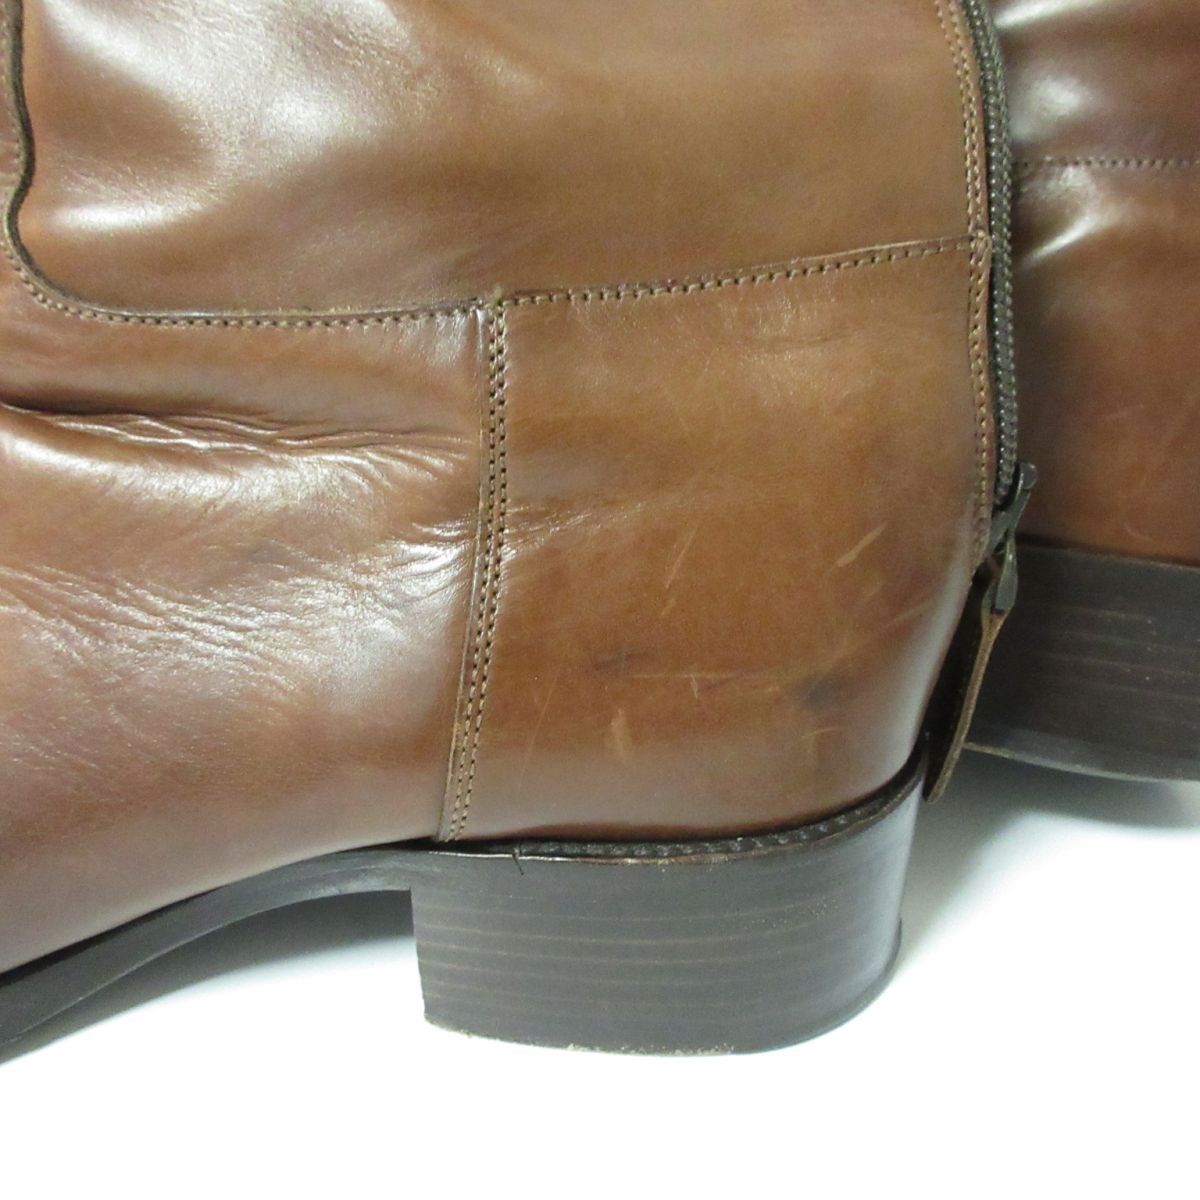  прекрасный товар SARTORE Sartre кожа задний ремень жокей ботинки сапоги 35 примерно 22cm Brown чай 